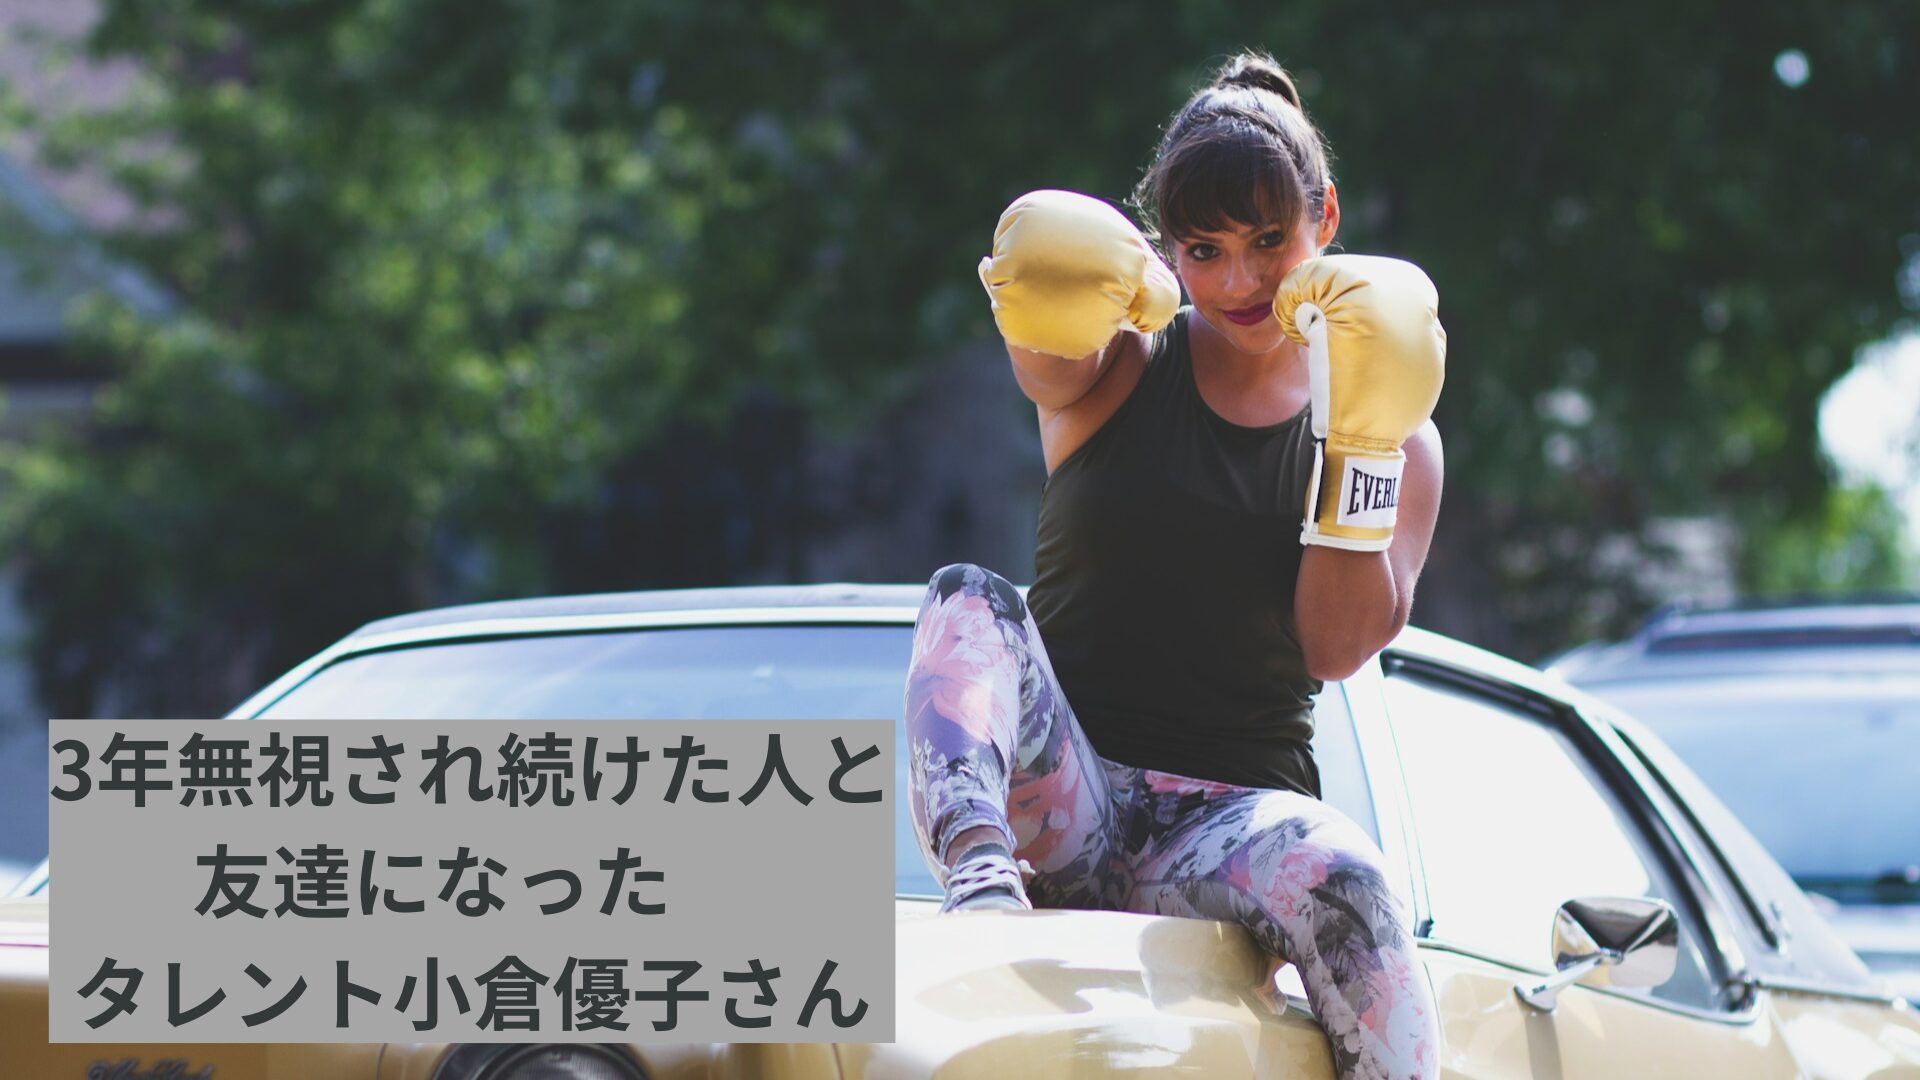 ボクシングしてる強い女性